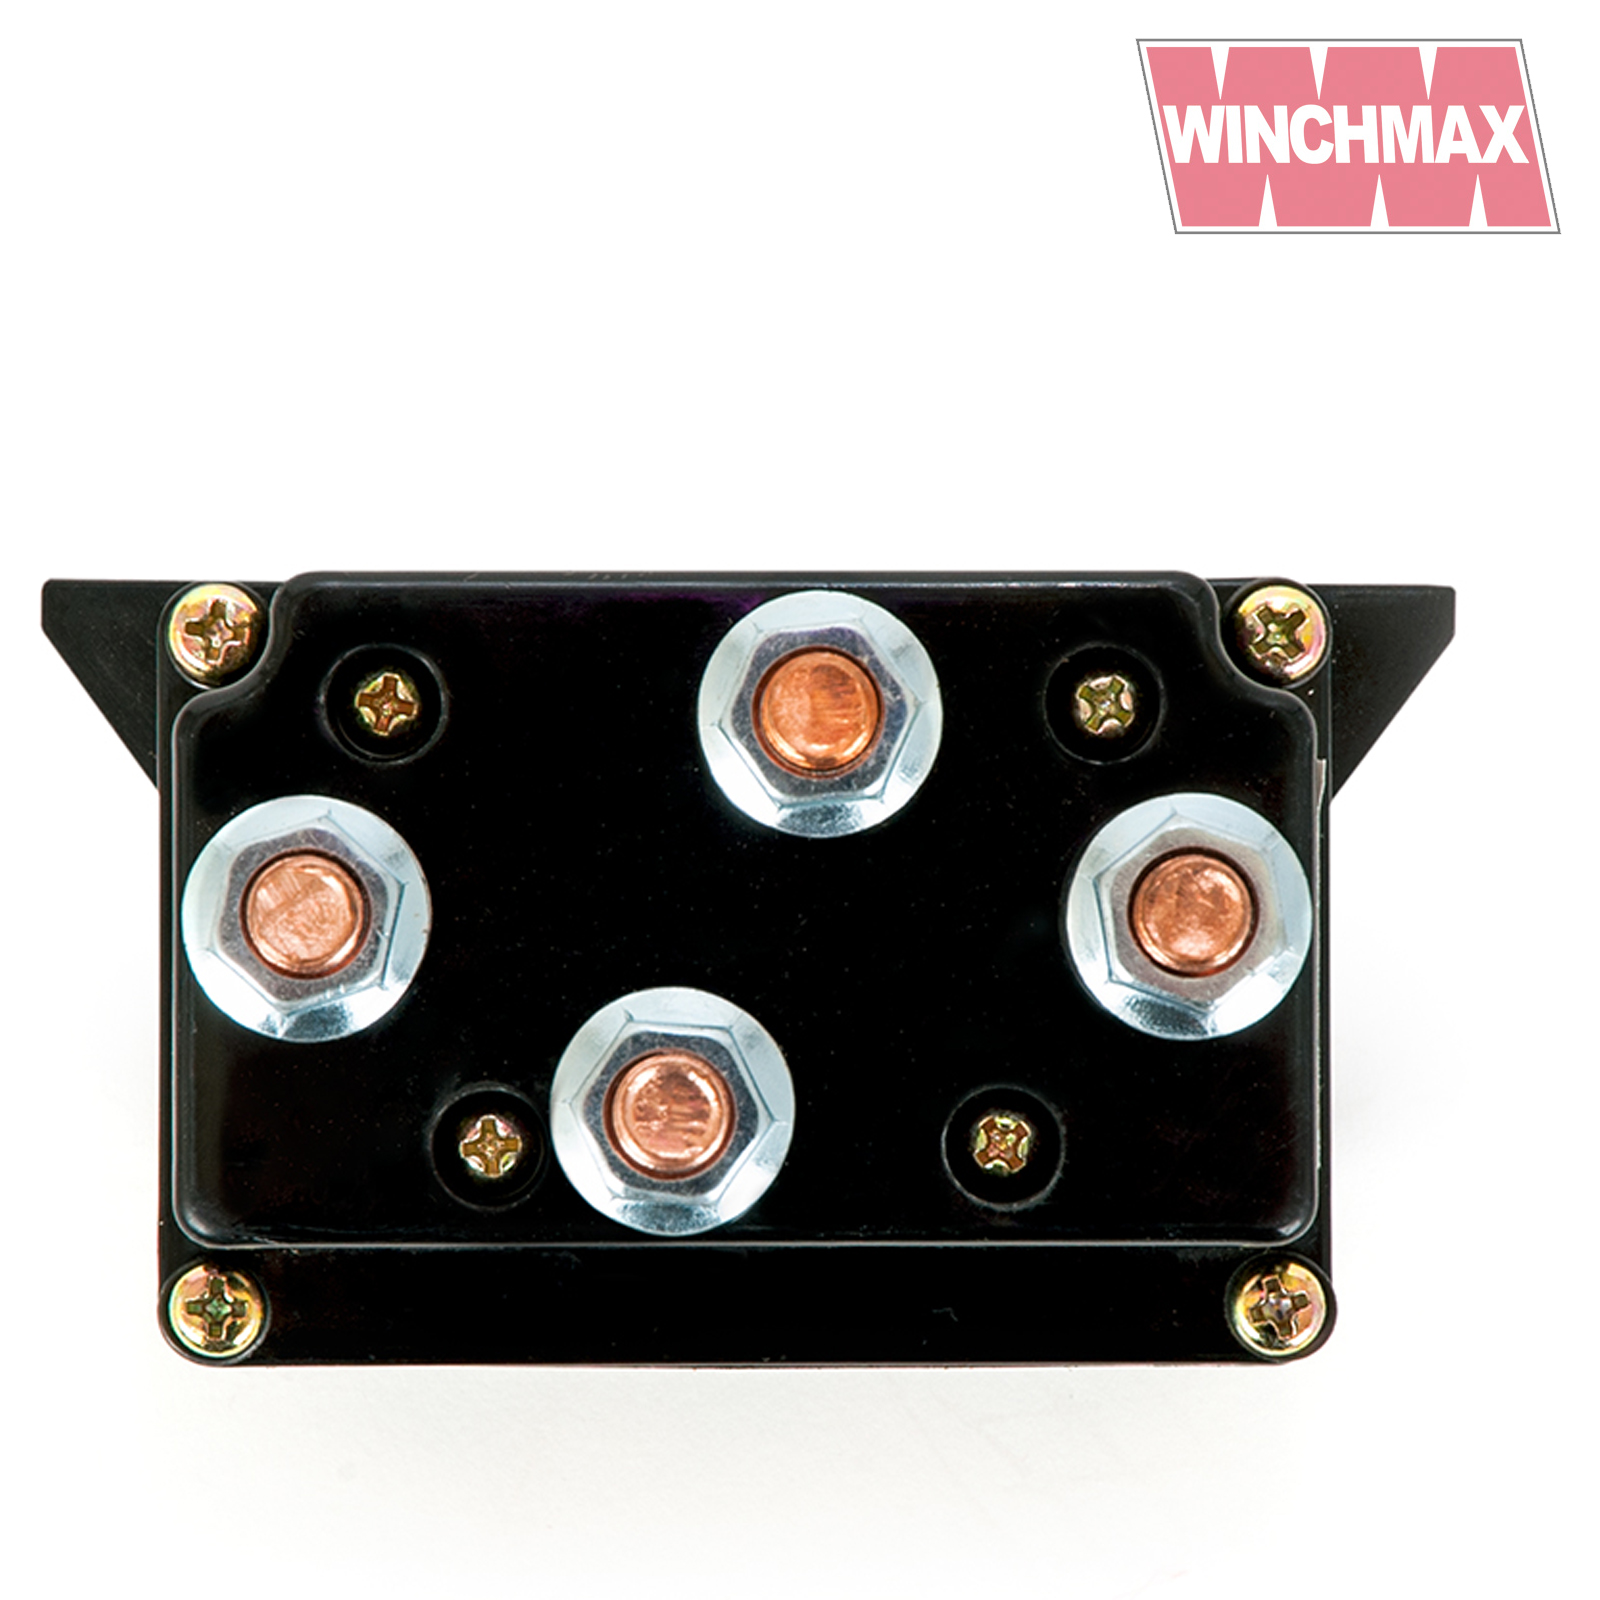 Winchmax 12v Marine Solenoid